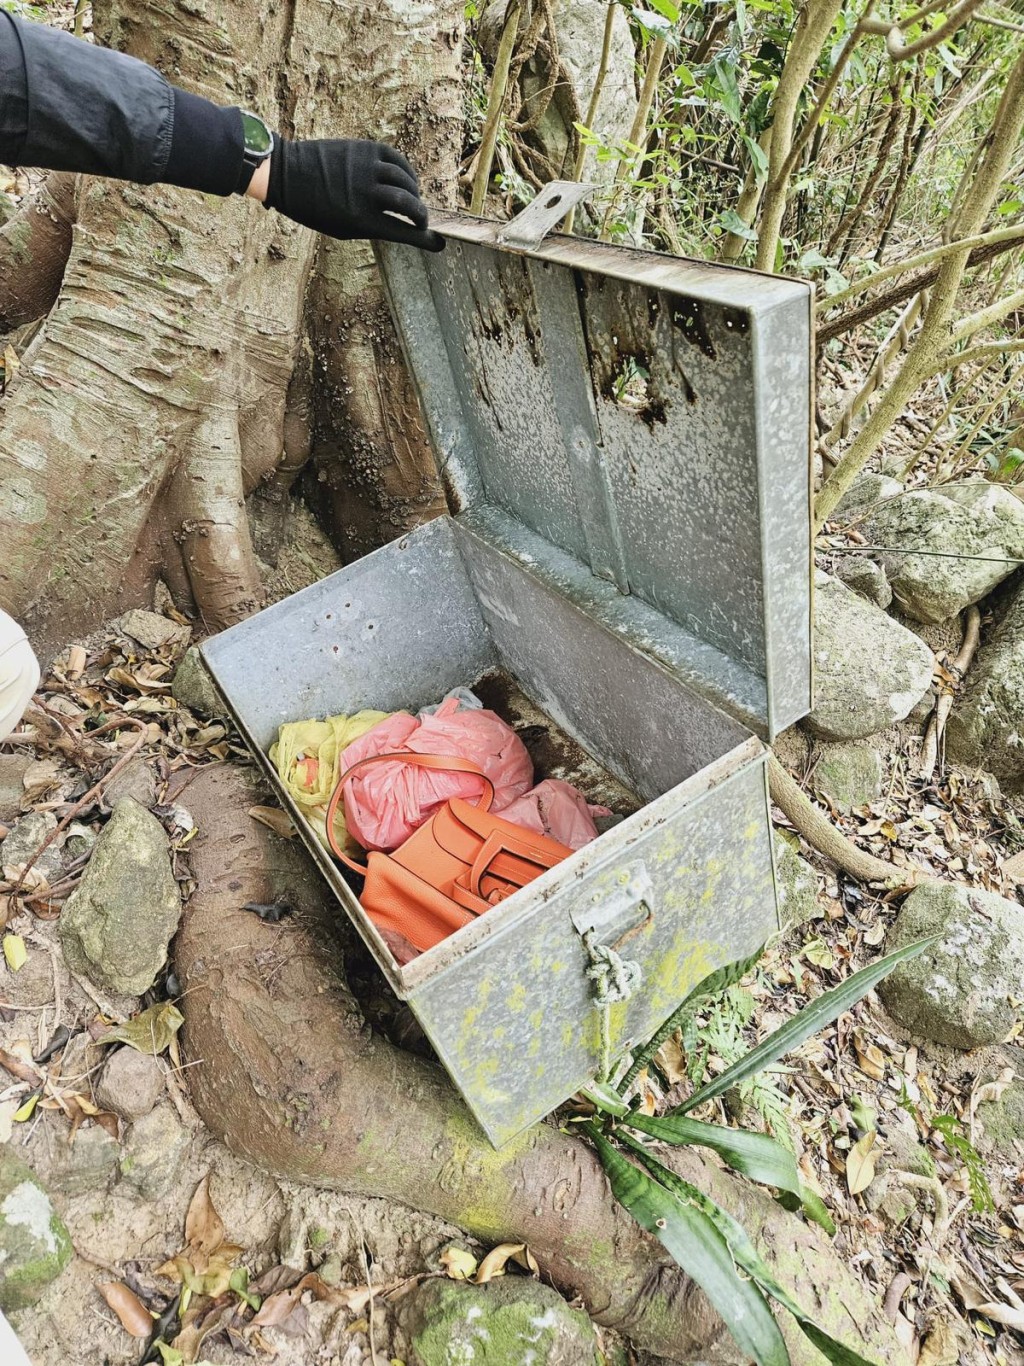 警方于近将军澳村后山坡一个弃置铁箱内检获一个手袋。警方提供